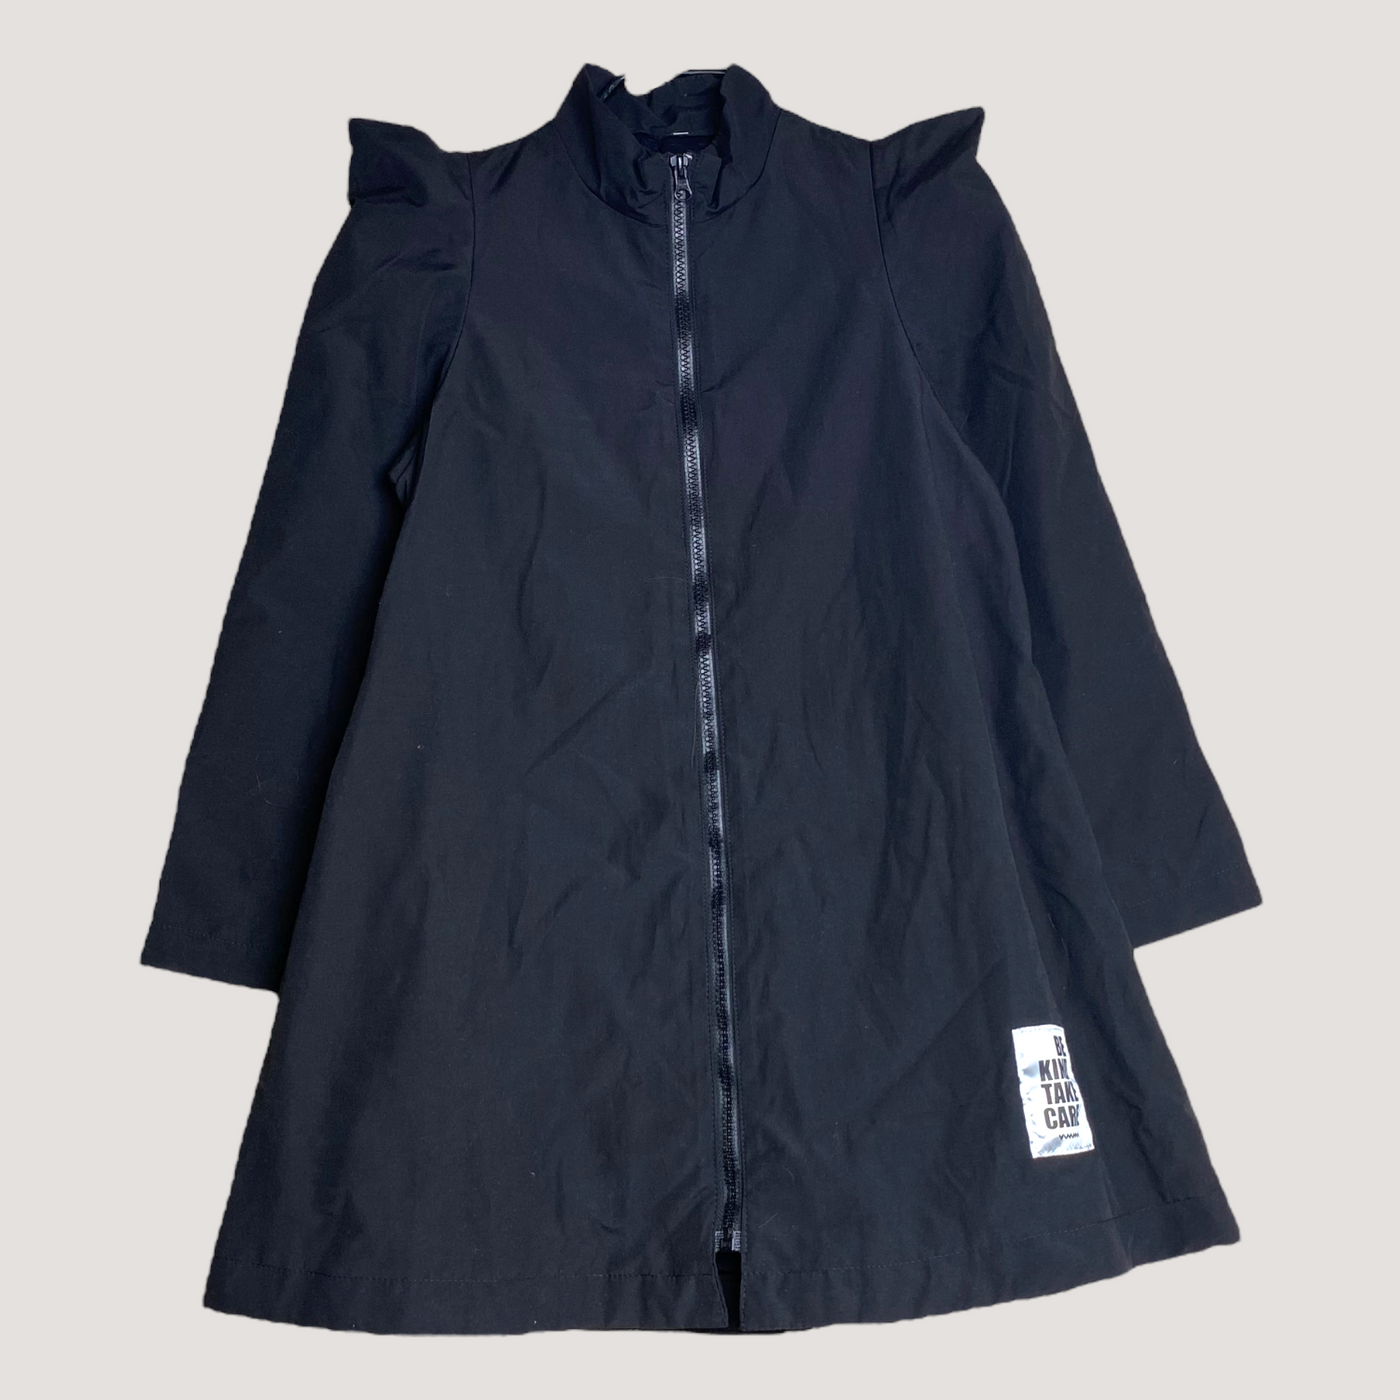 Vimma woven zipper dress, black | 140cm